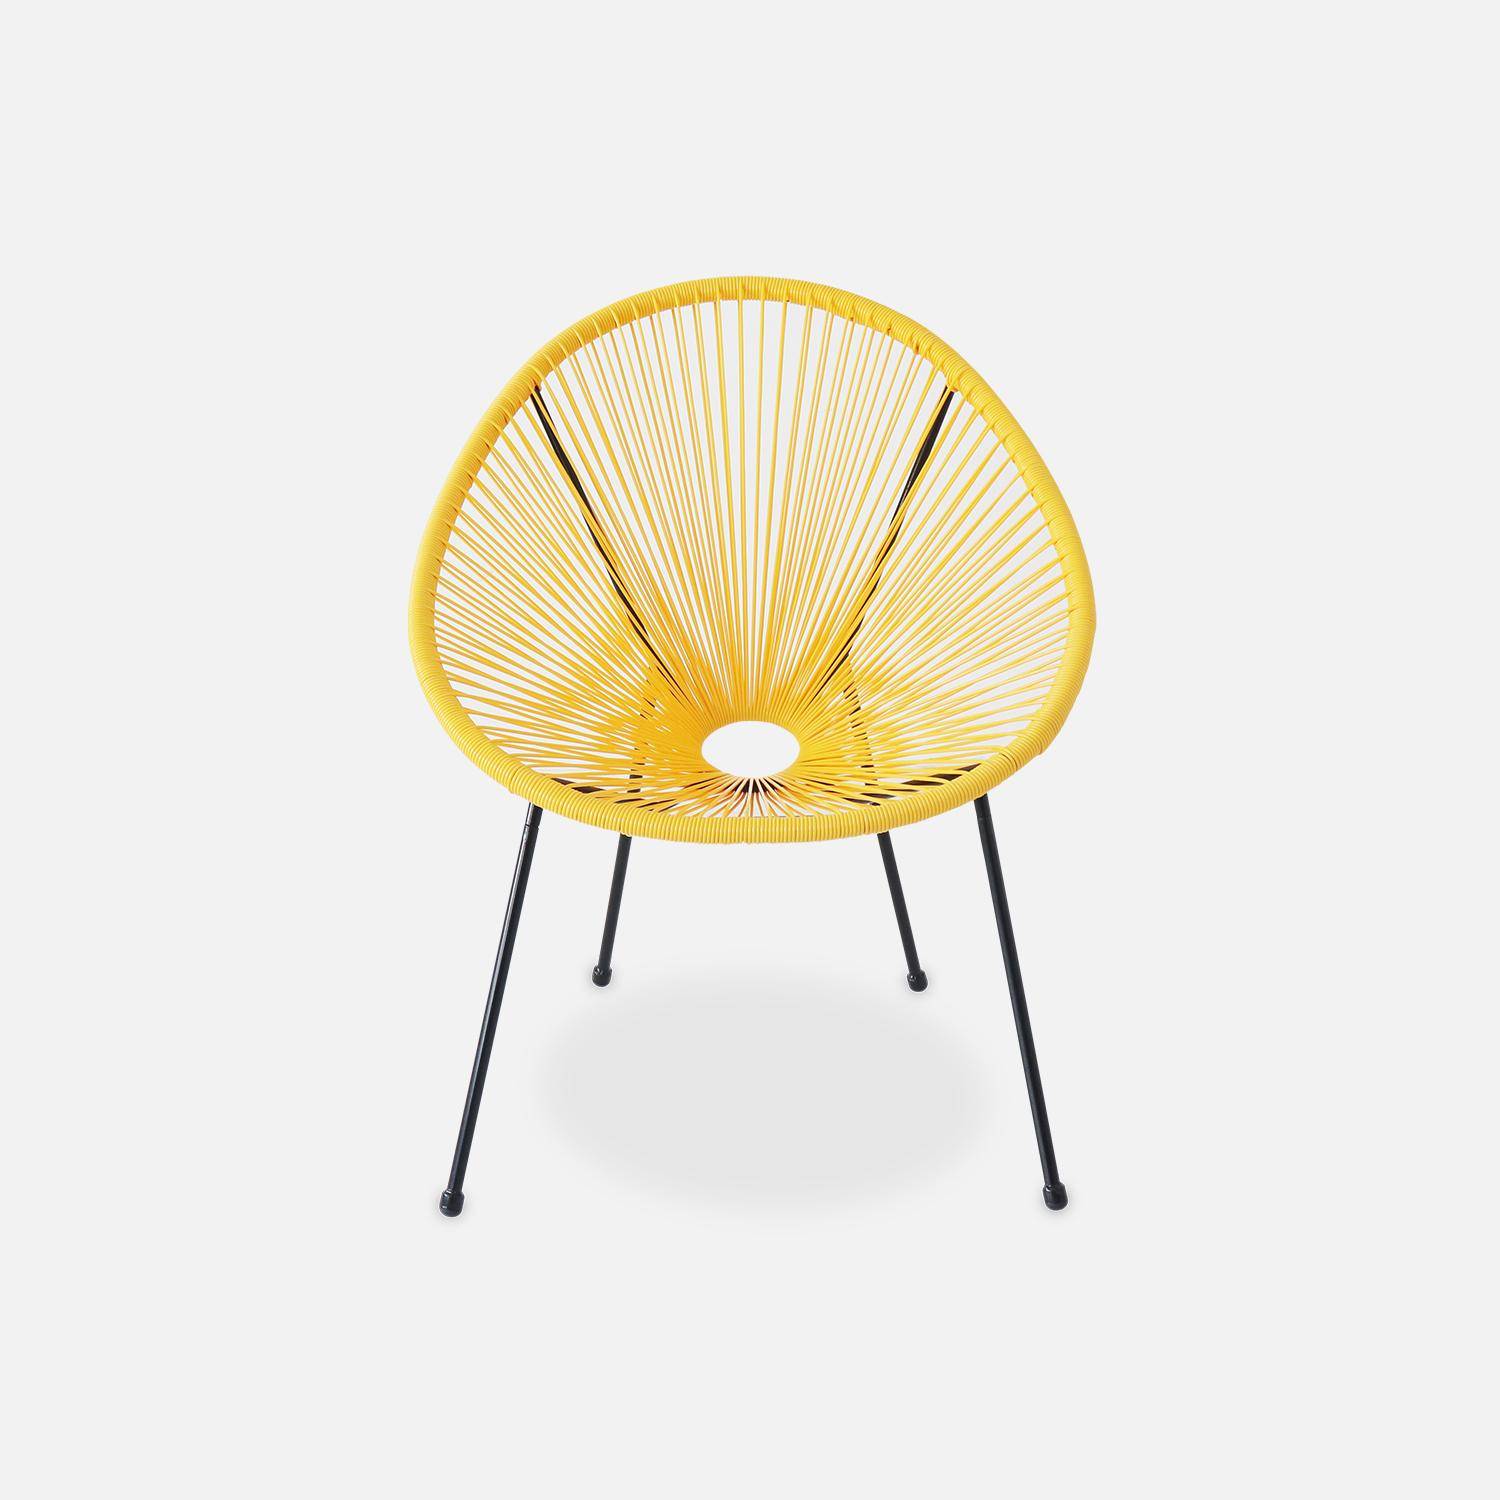 ACAPULCO stoel ei-vormig -Geel- Stoel 4 poten retro design, plastic koorden, binnen/buiten Photo3